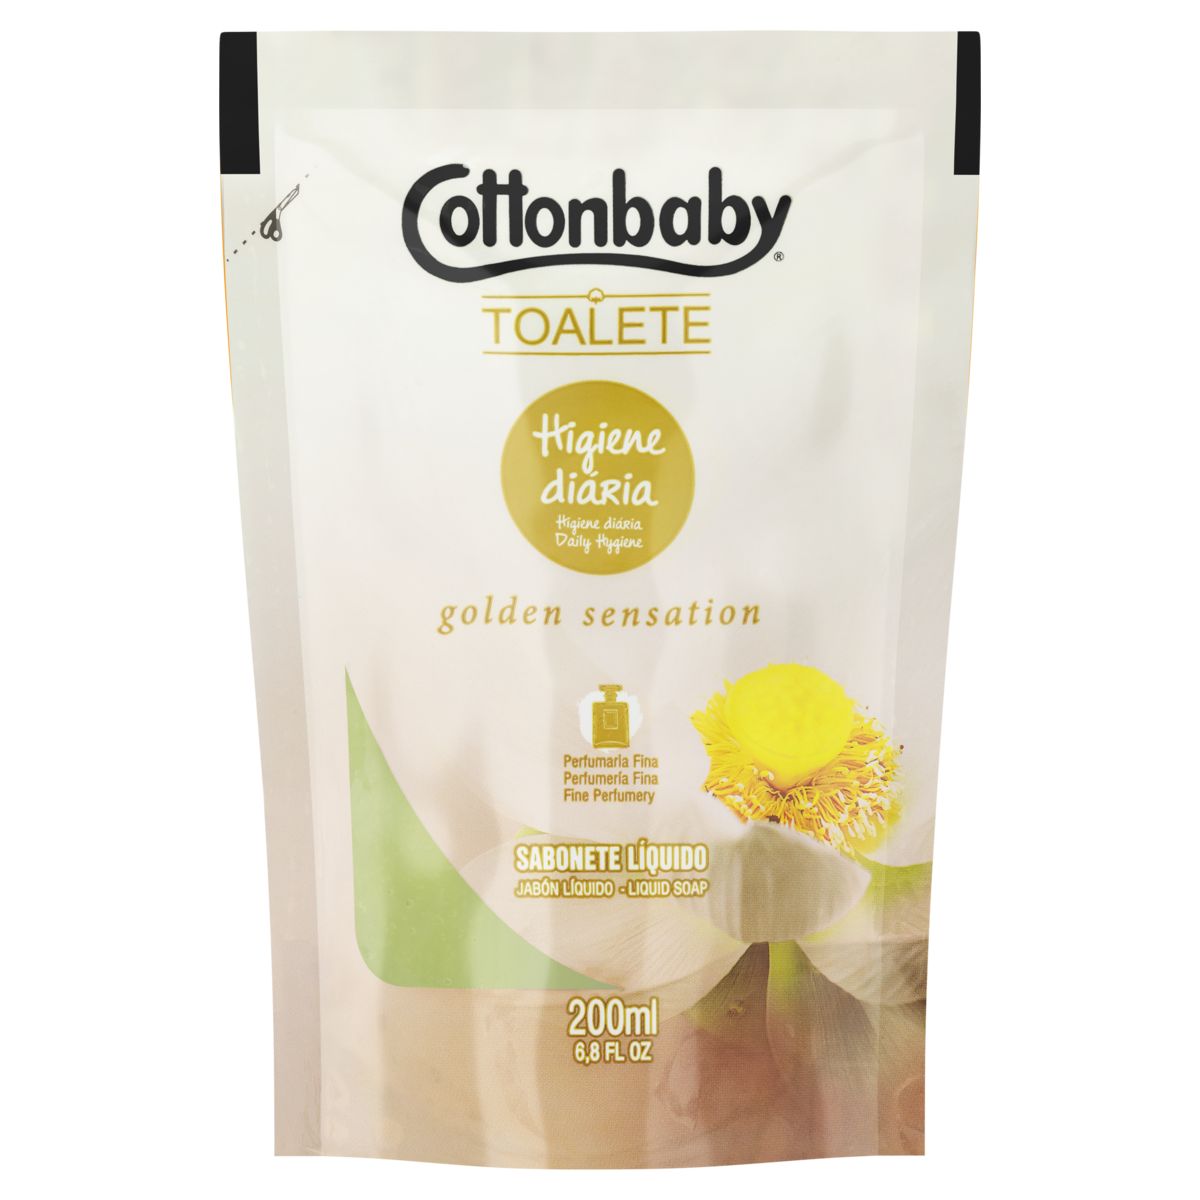 Sabonete Líquido Cottonbaby Toalete Golden Sensation 200ml